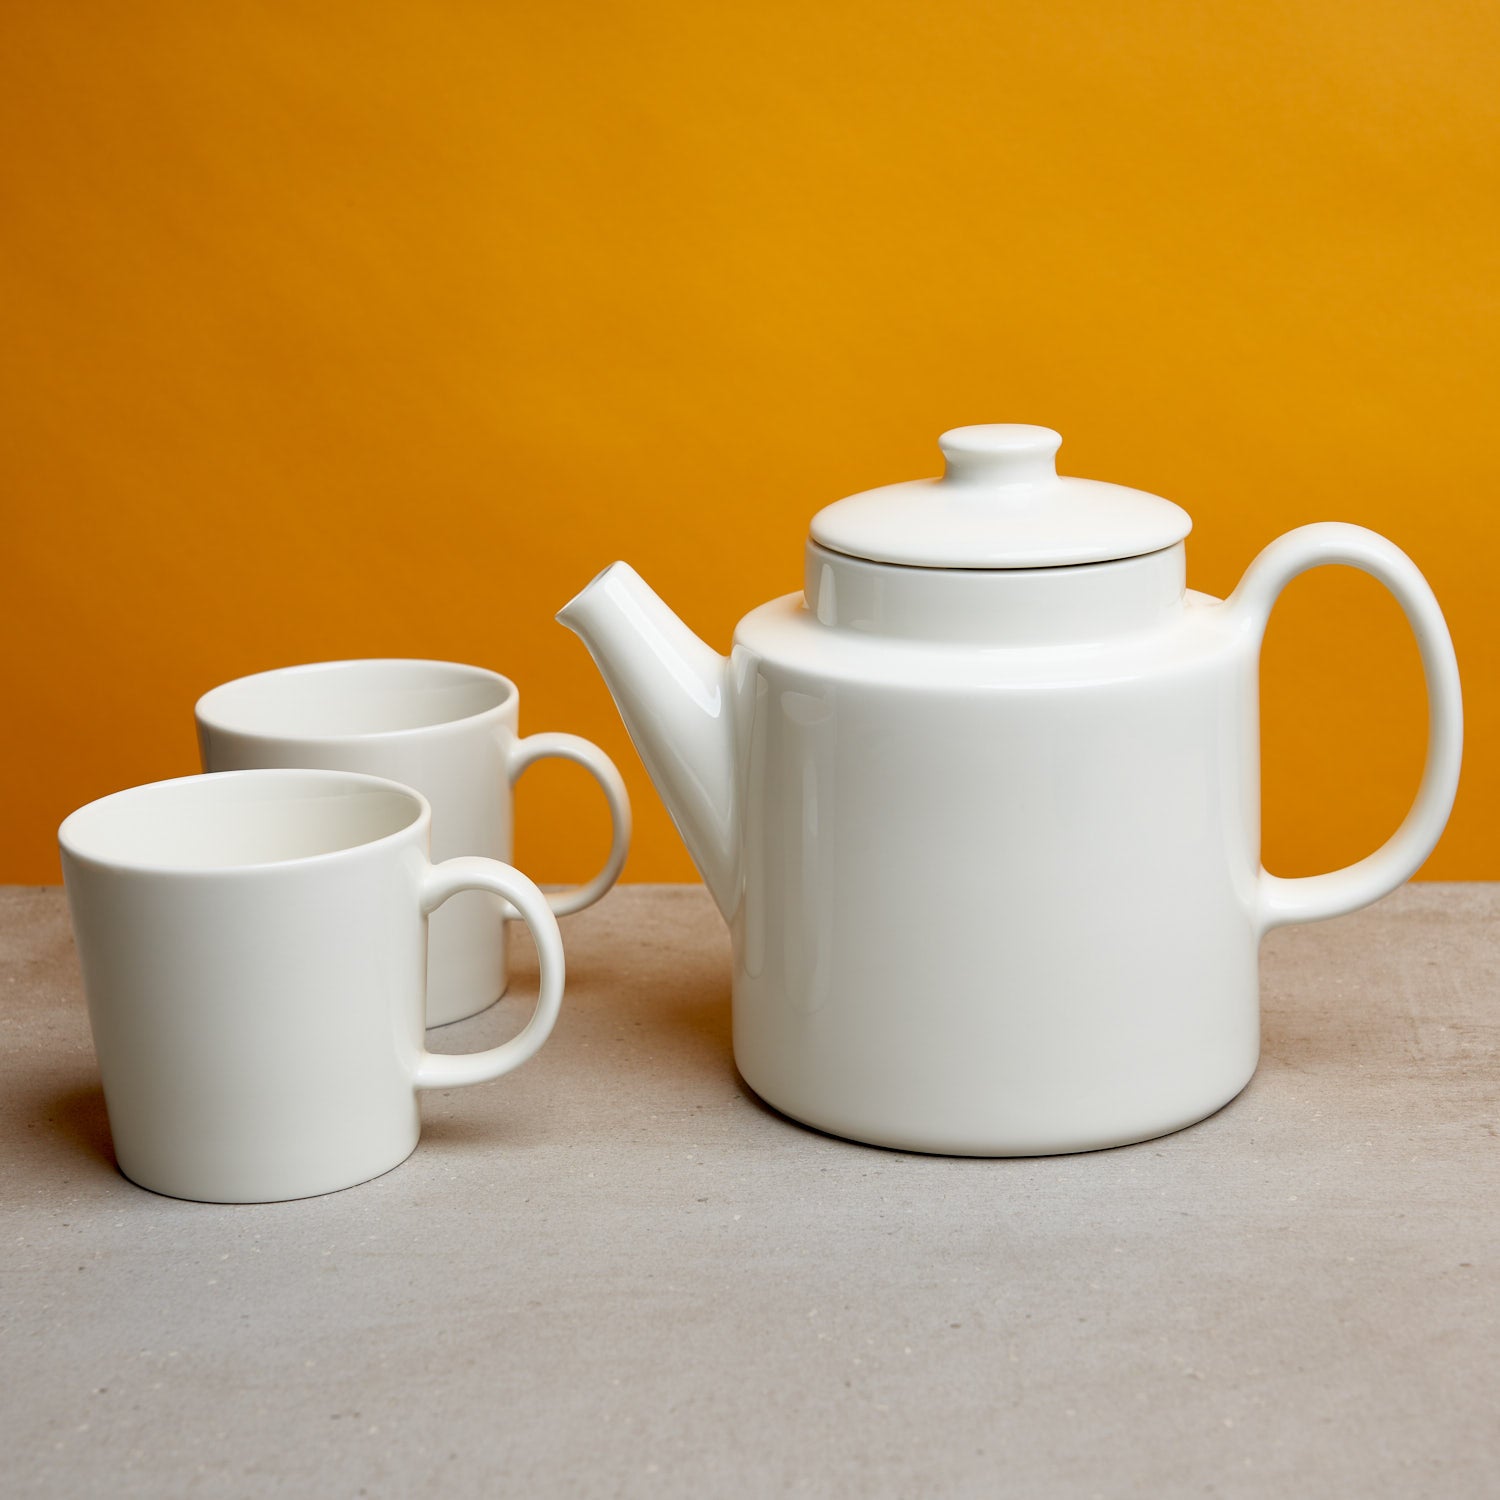 Iittala Teema Teaware Gift Set - August Uncommon Tea